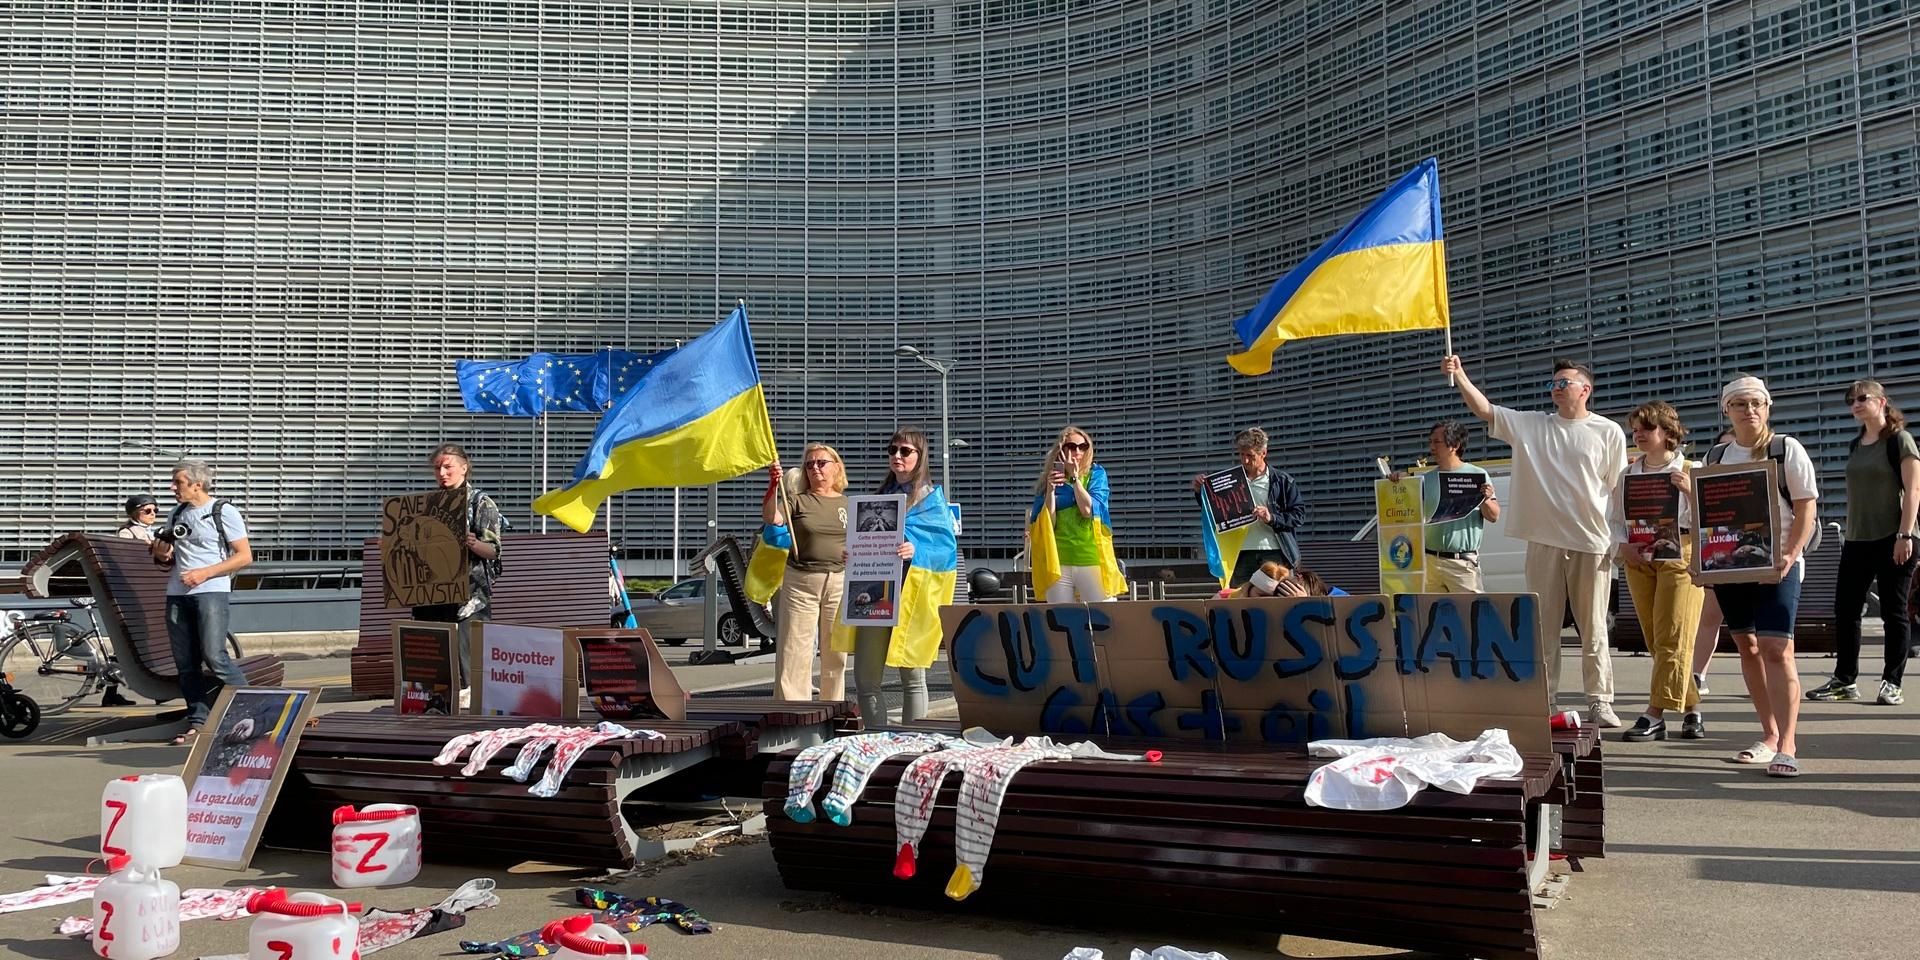 ”Stäng av den ryska oljan och gasen”, kräver ukrainska demonstranter i EU-kvarteren i Bryssel där EU-ländernas utrikesministrar möts under måndagen.